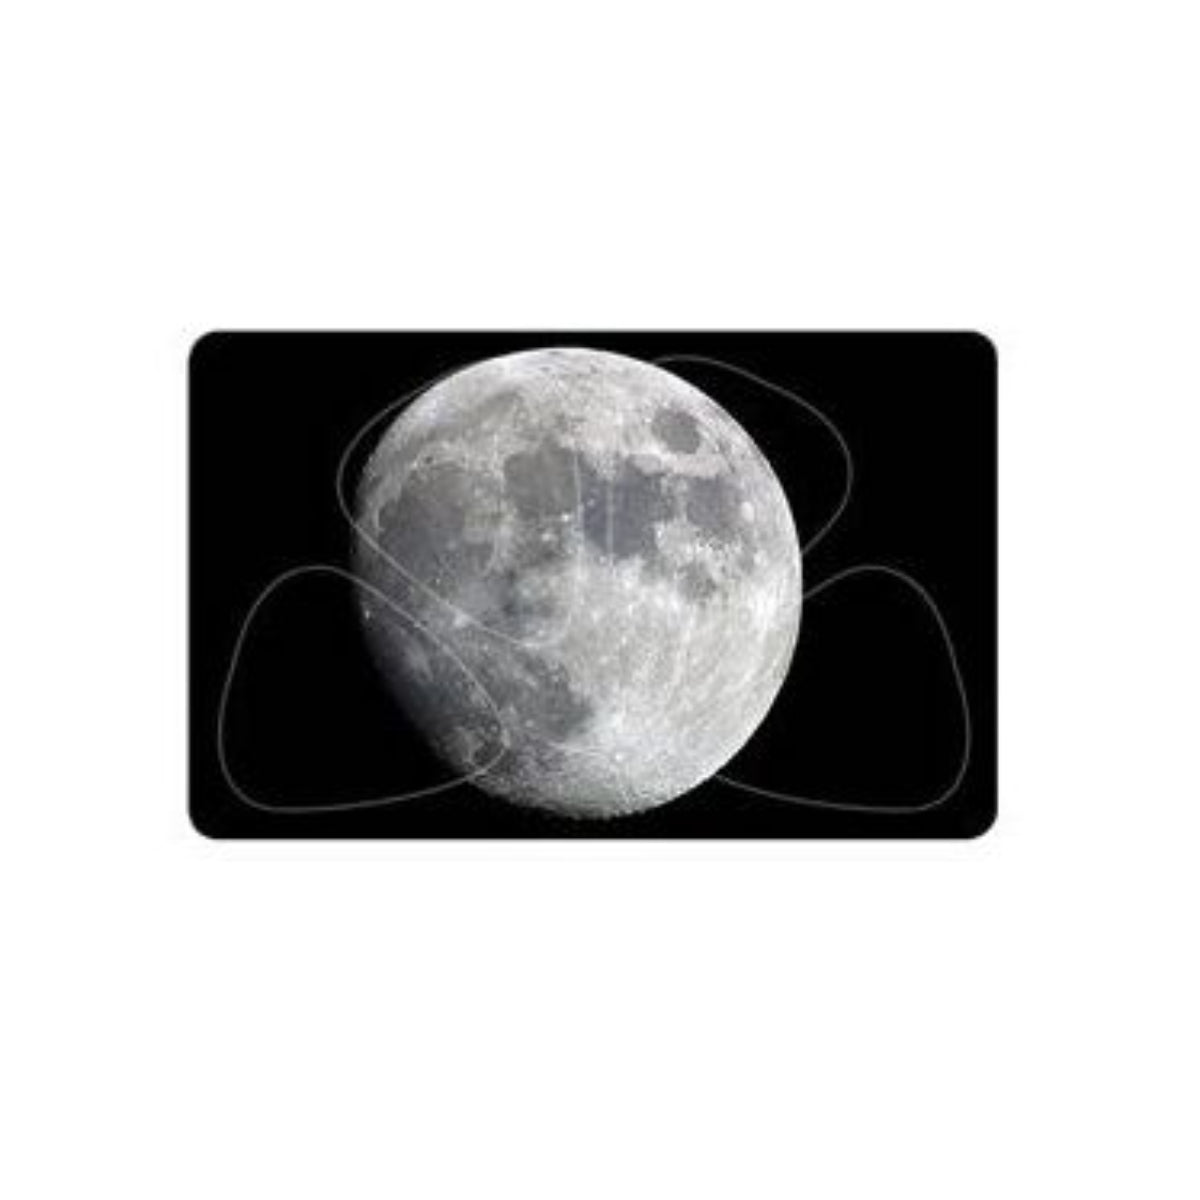 Pick card - 4 picks - Full Moon Design